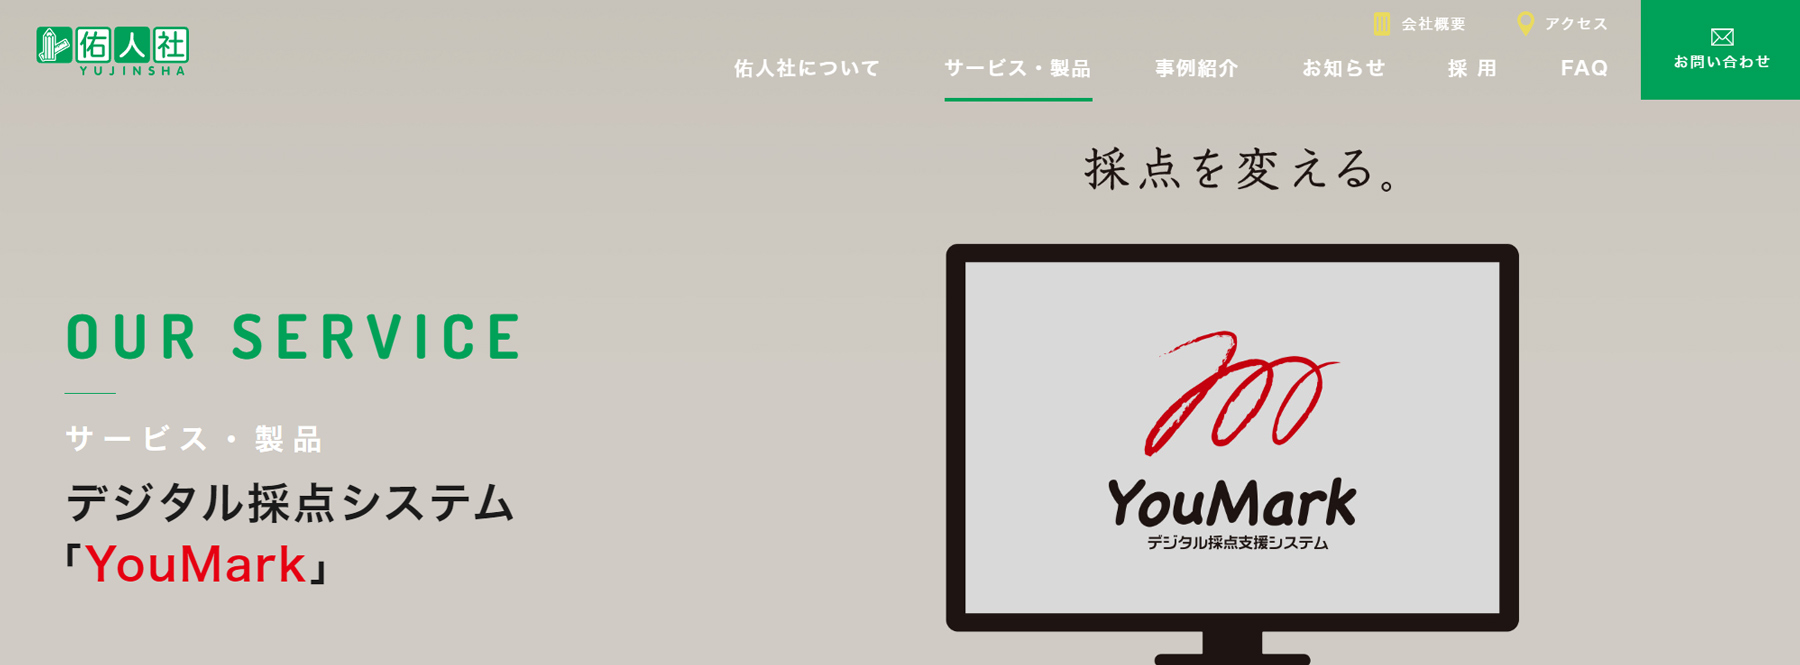 YouMark公式Webサイト